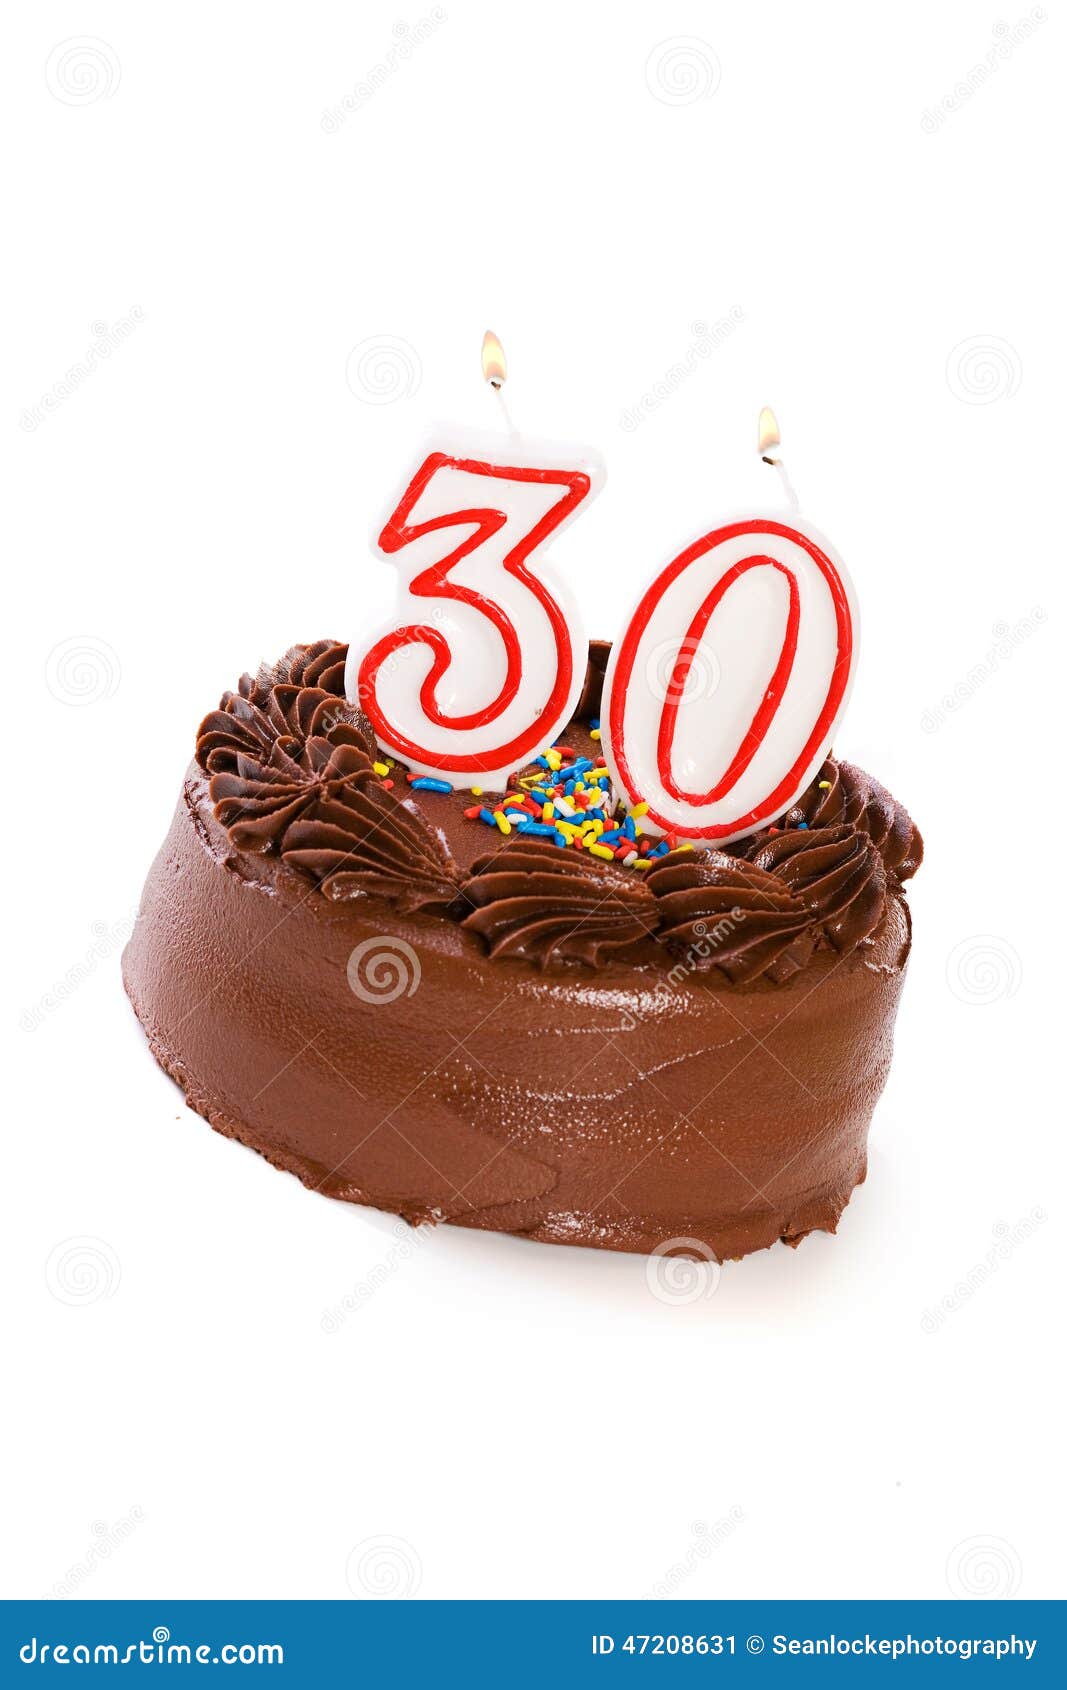 Торт: Испеките для того чтобы отпраздновать 30-ый день рождения. Isolaed на белом шоколаде заморозило торт с различными пронумерованными свечами на верхней части